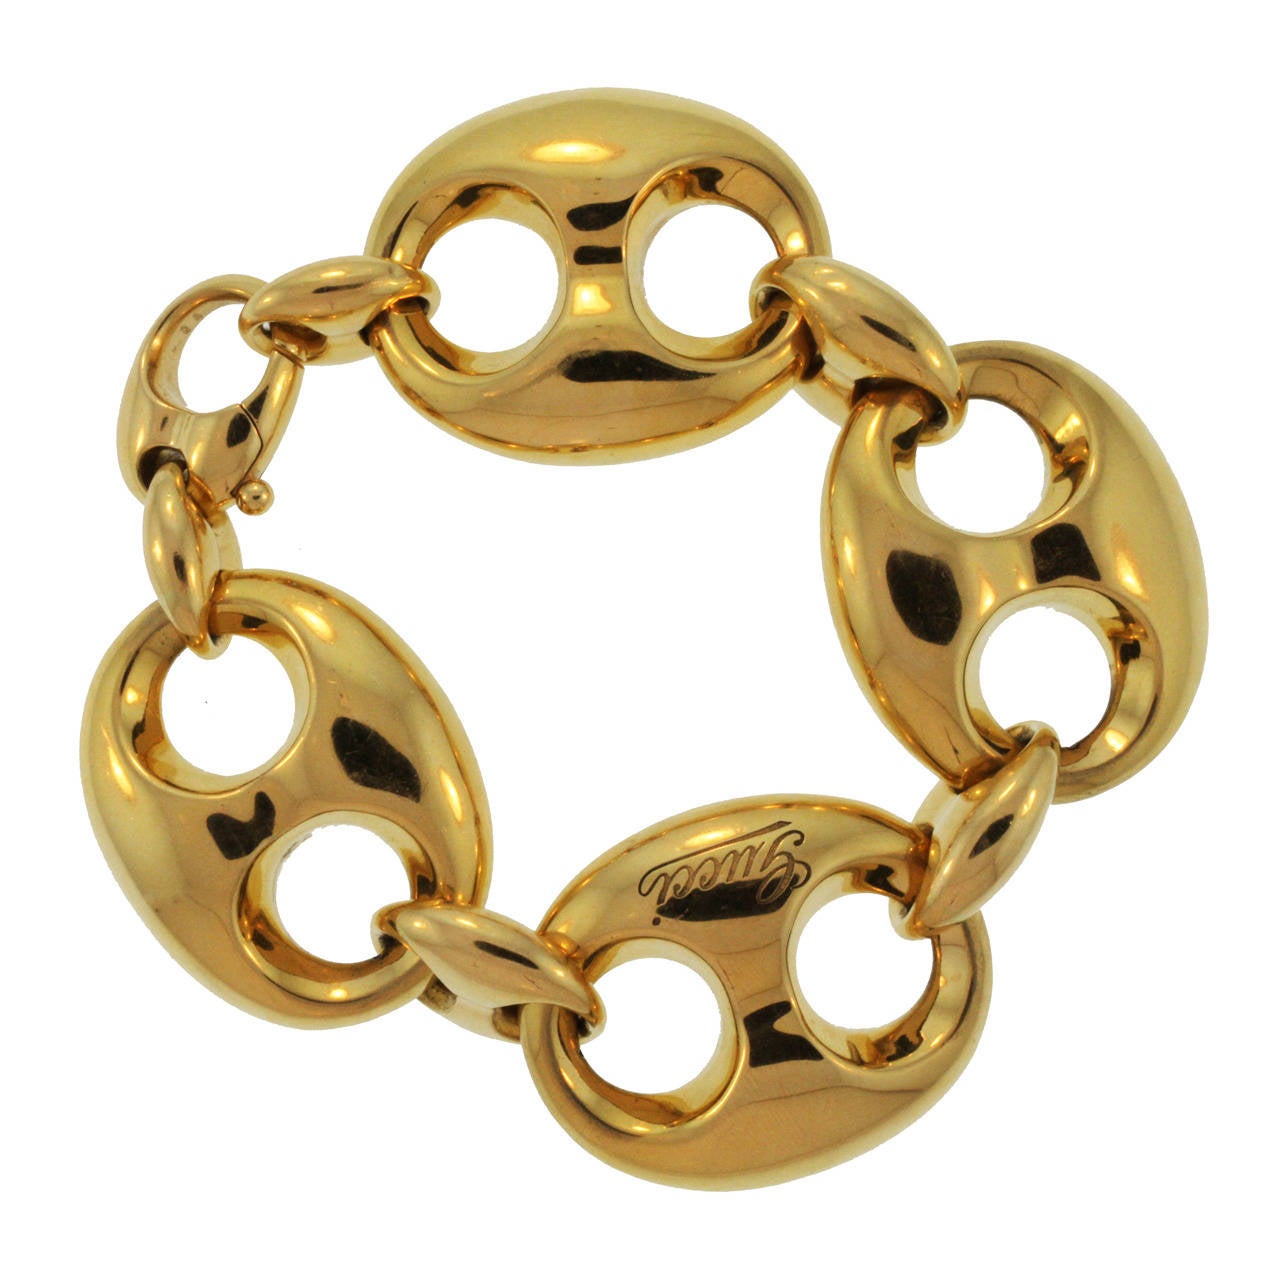 Gucci Gold Link Bracelet